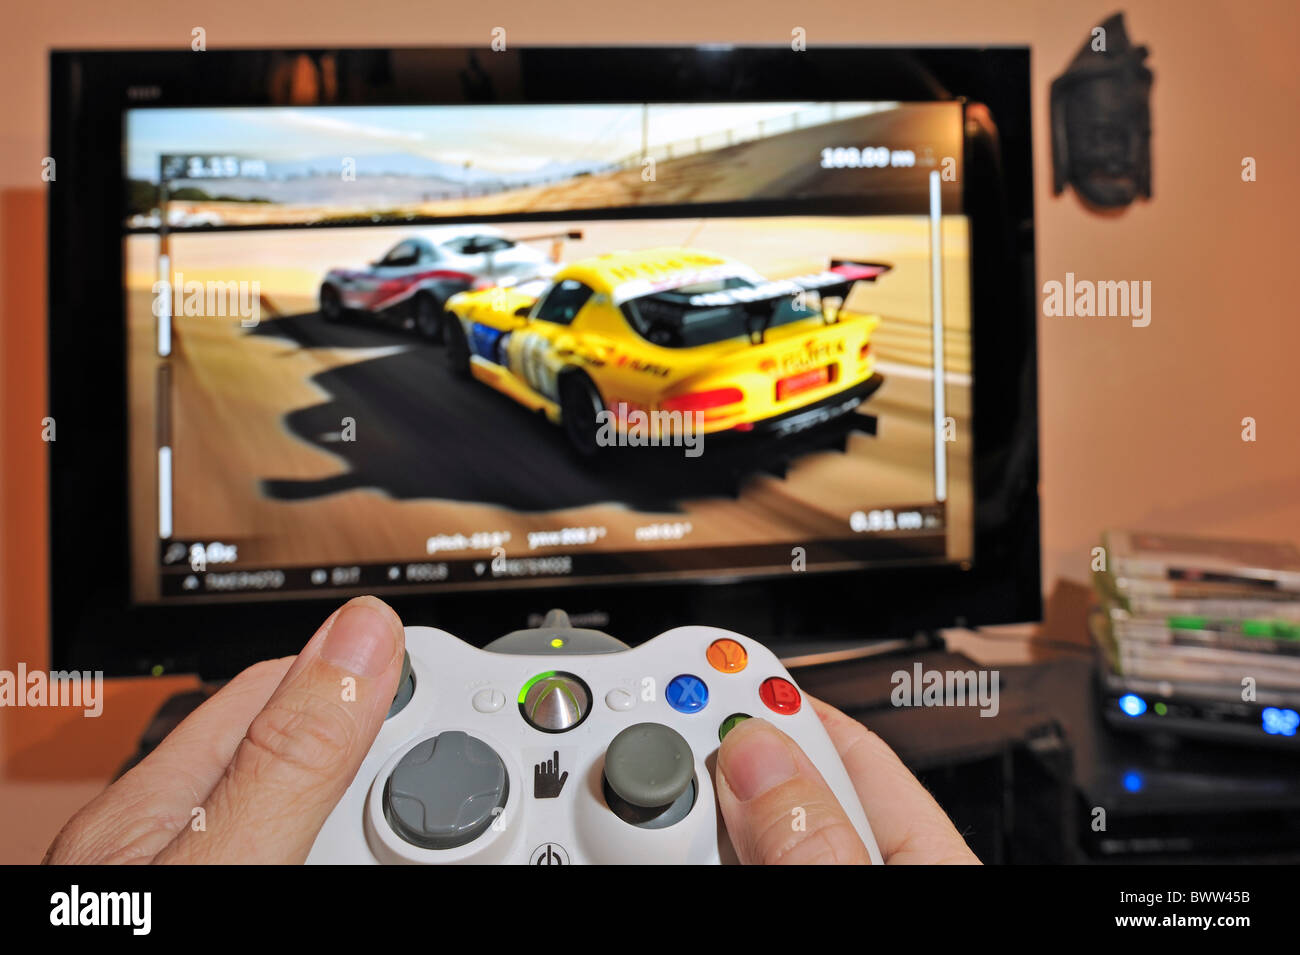 Manos sosteniendo el controlador en frente de una pantalla de televisión mostrando los coches en el juego de carreras Foto de stock